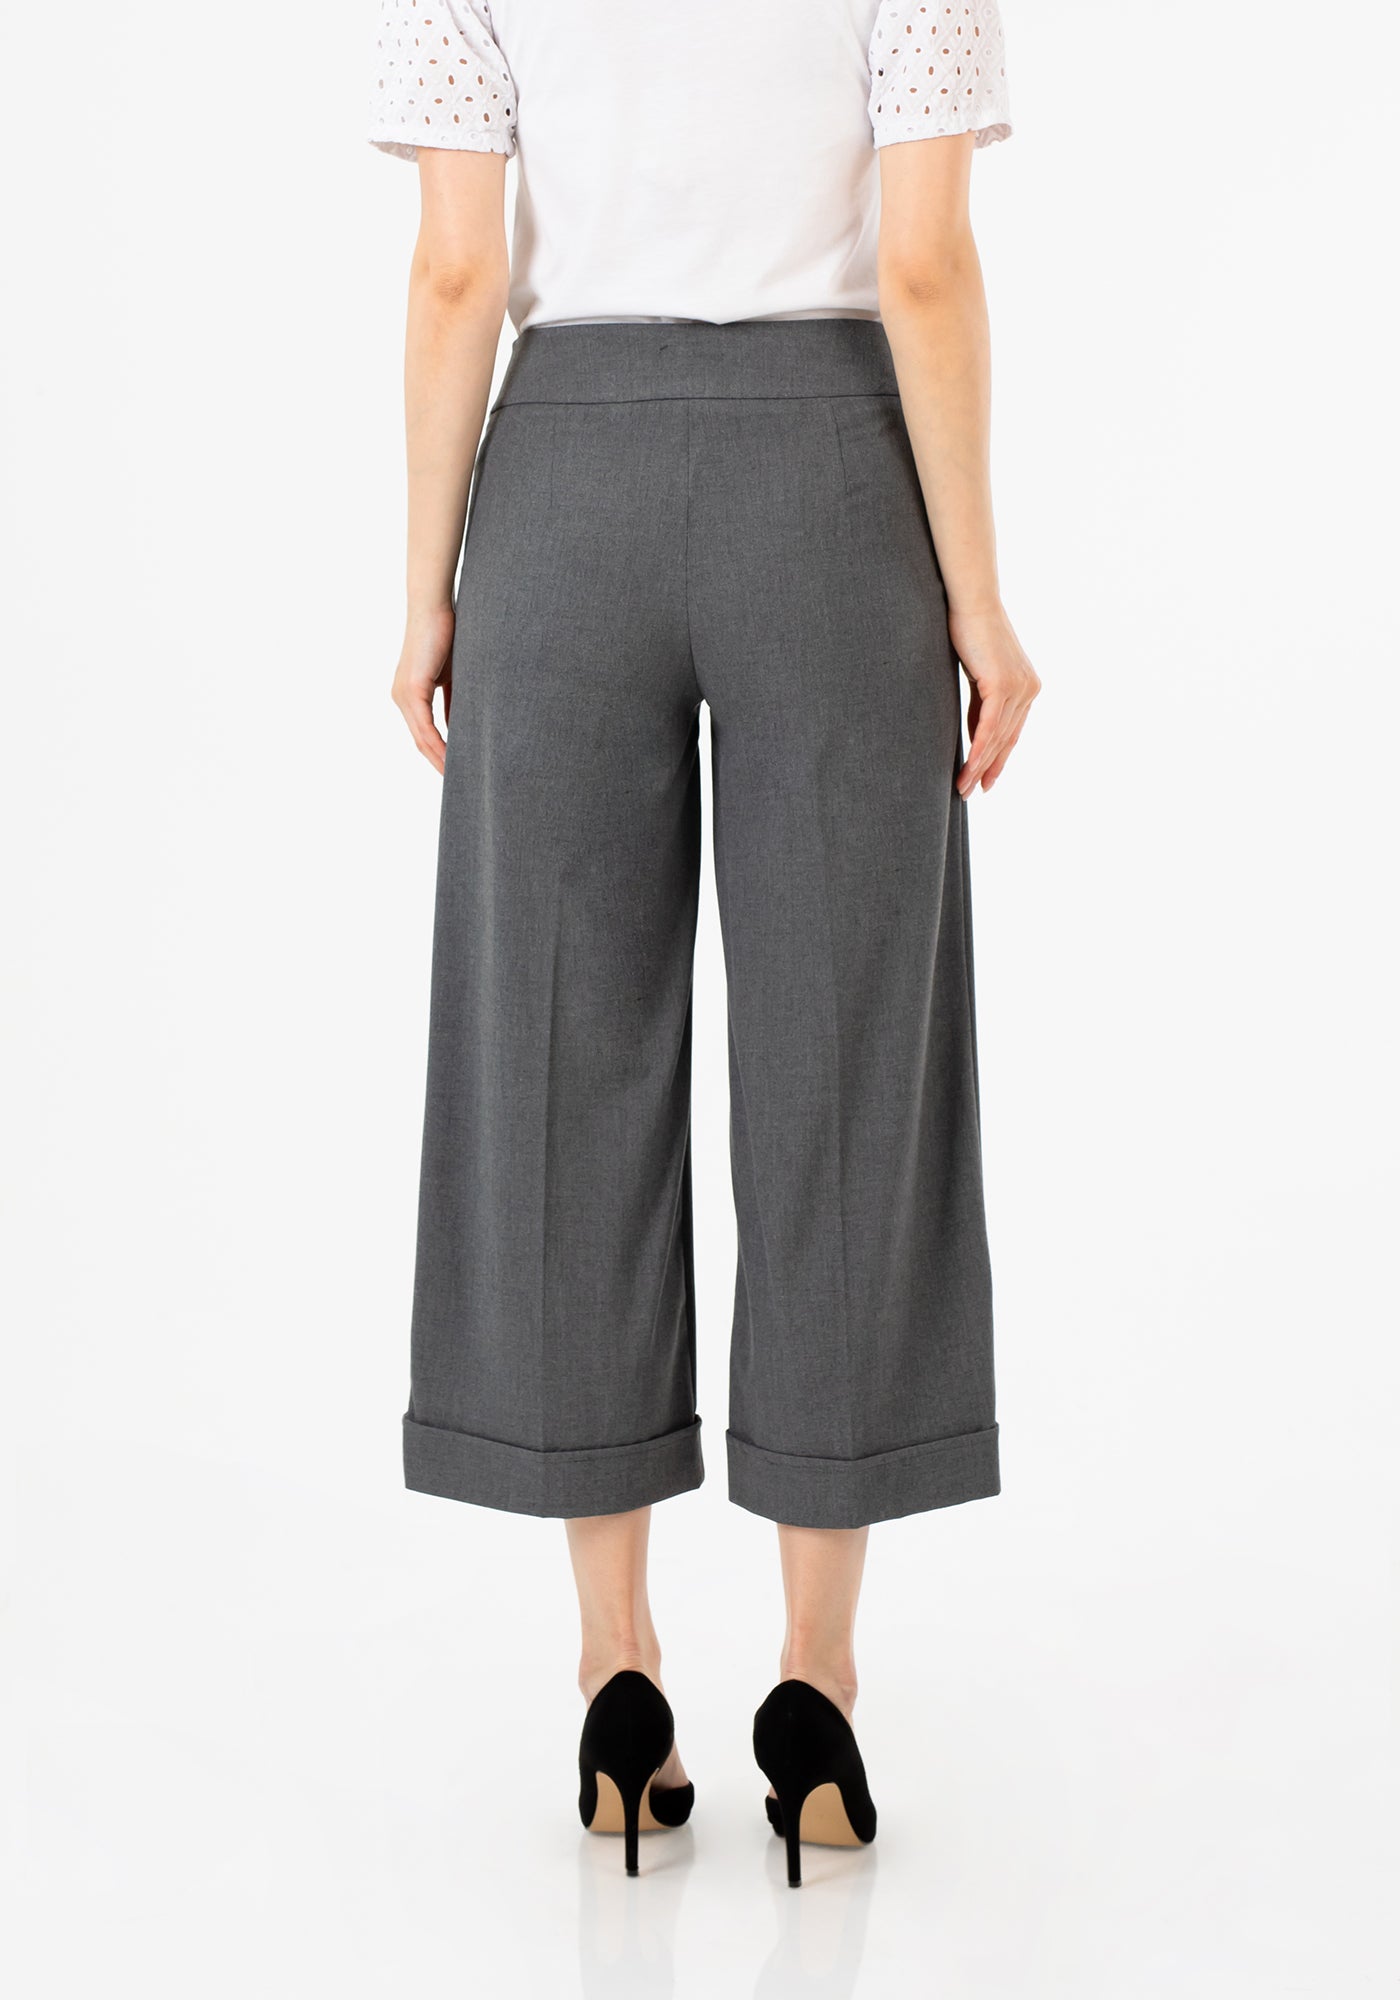 Women's Grey Wide Leg Dress Pants - High Waist, Versatile and Chic